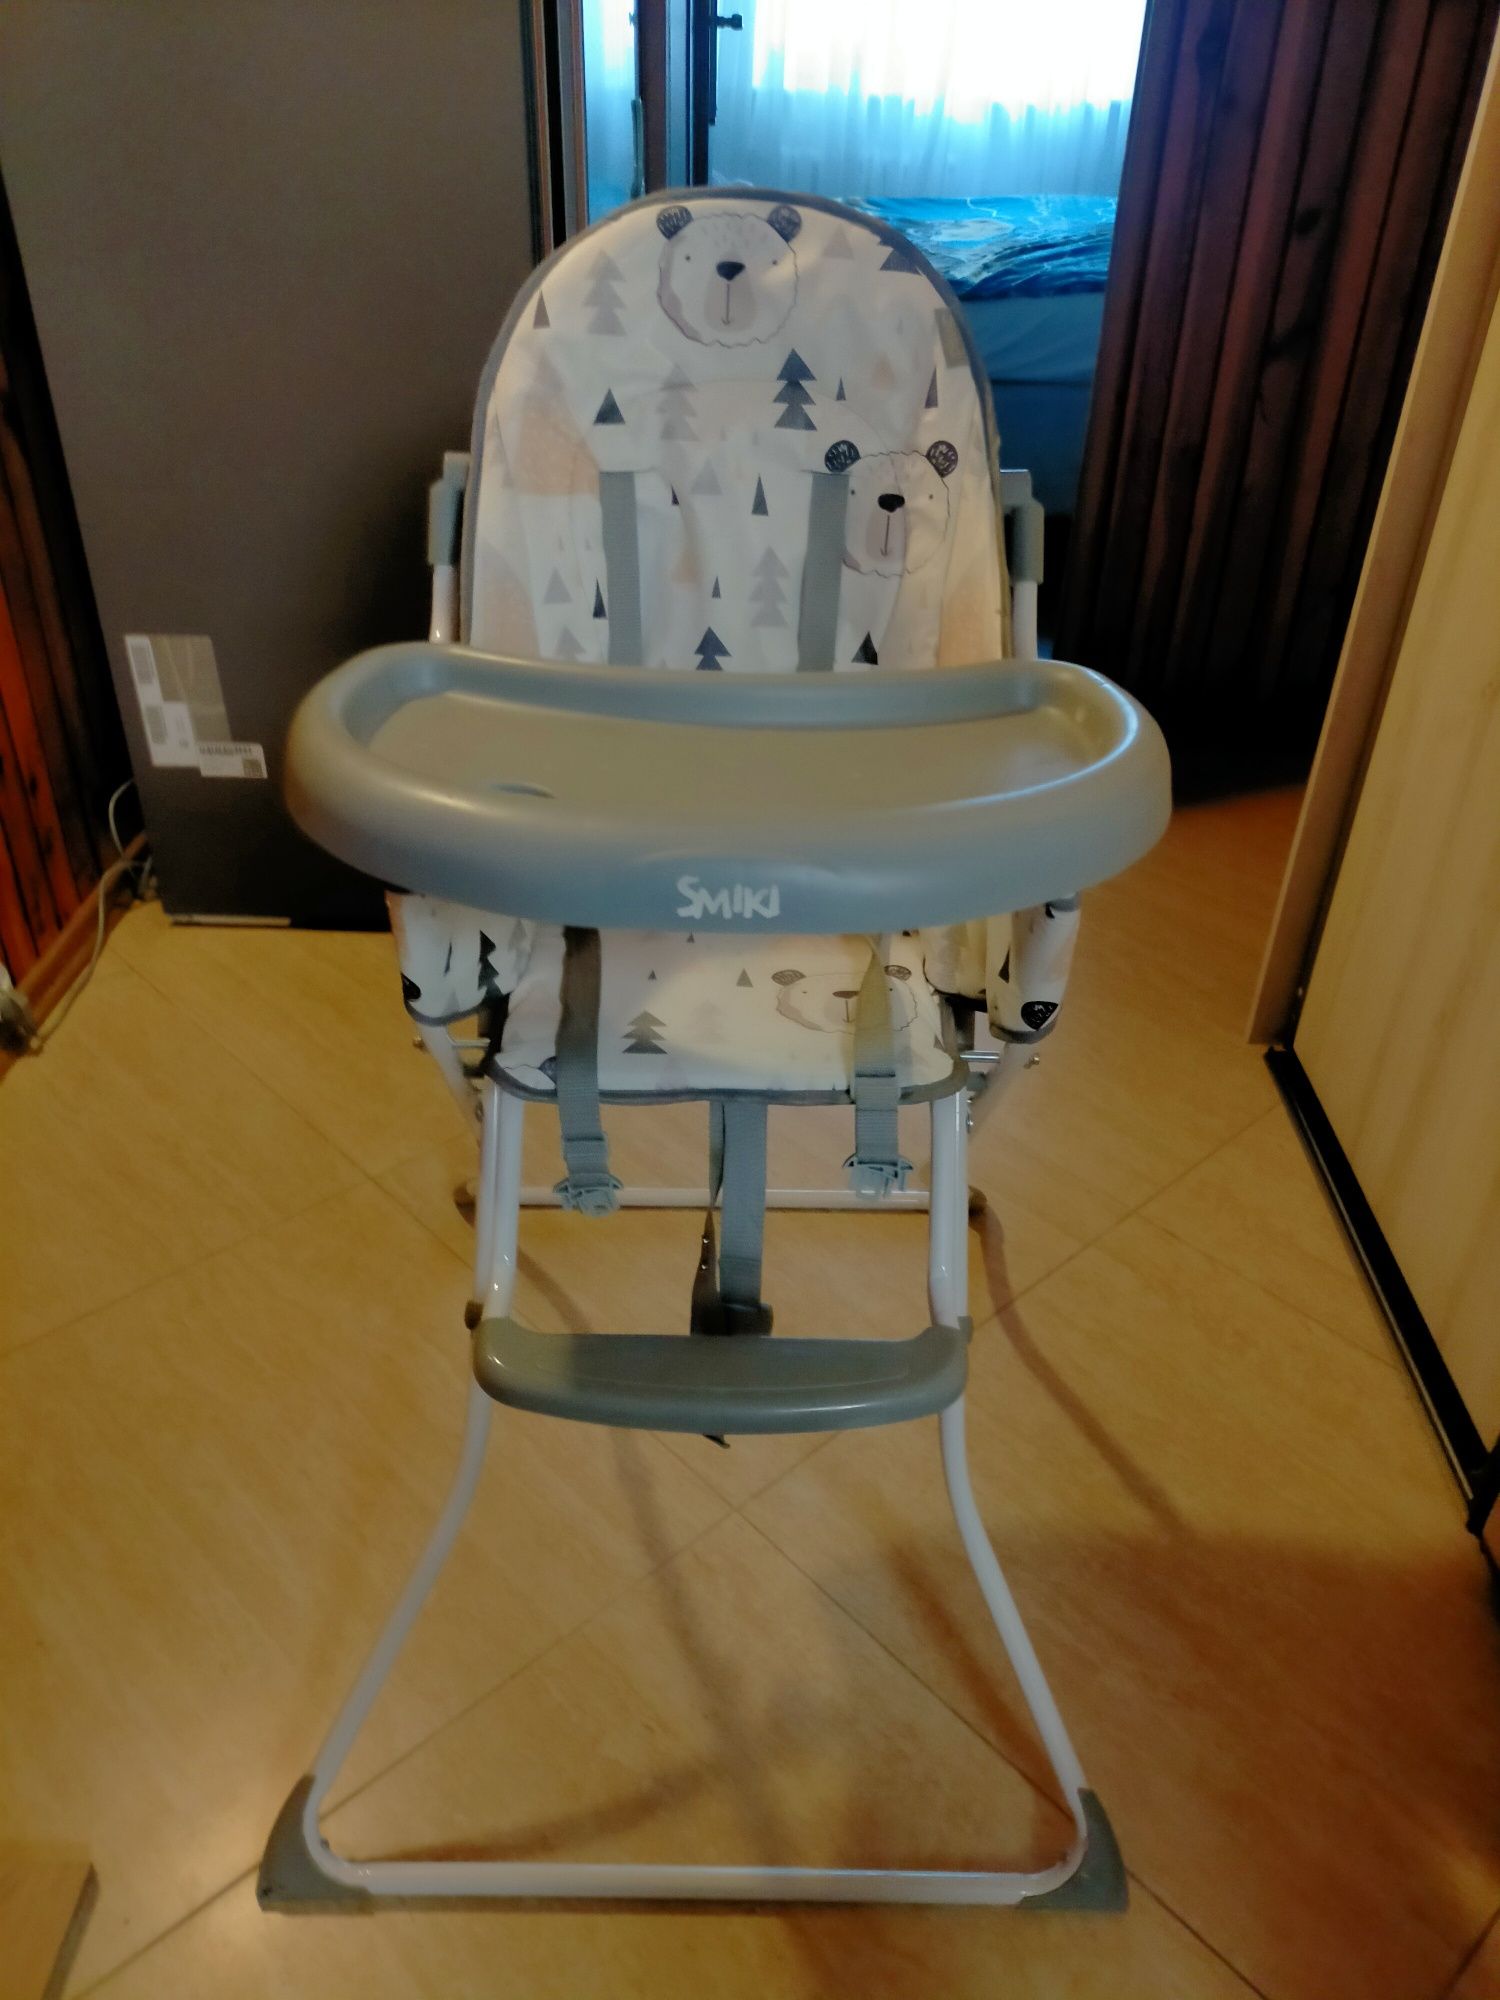 Krzesełko do karmienia dziecka